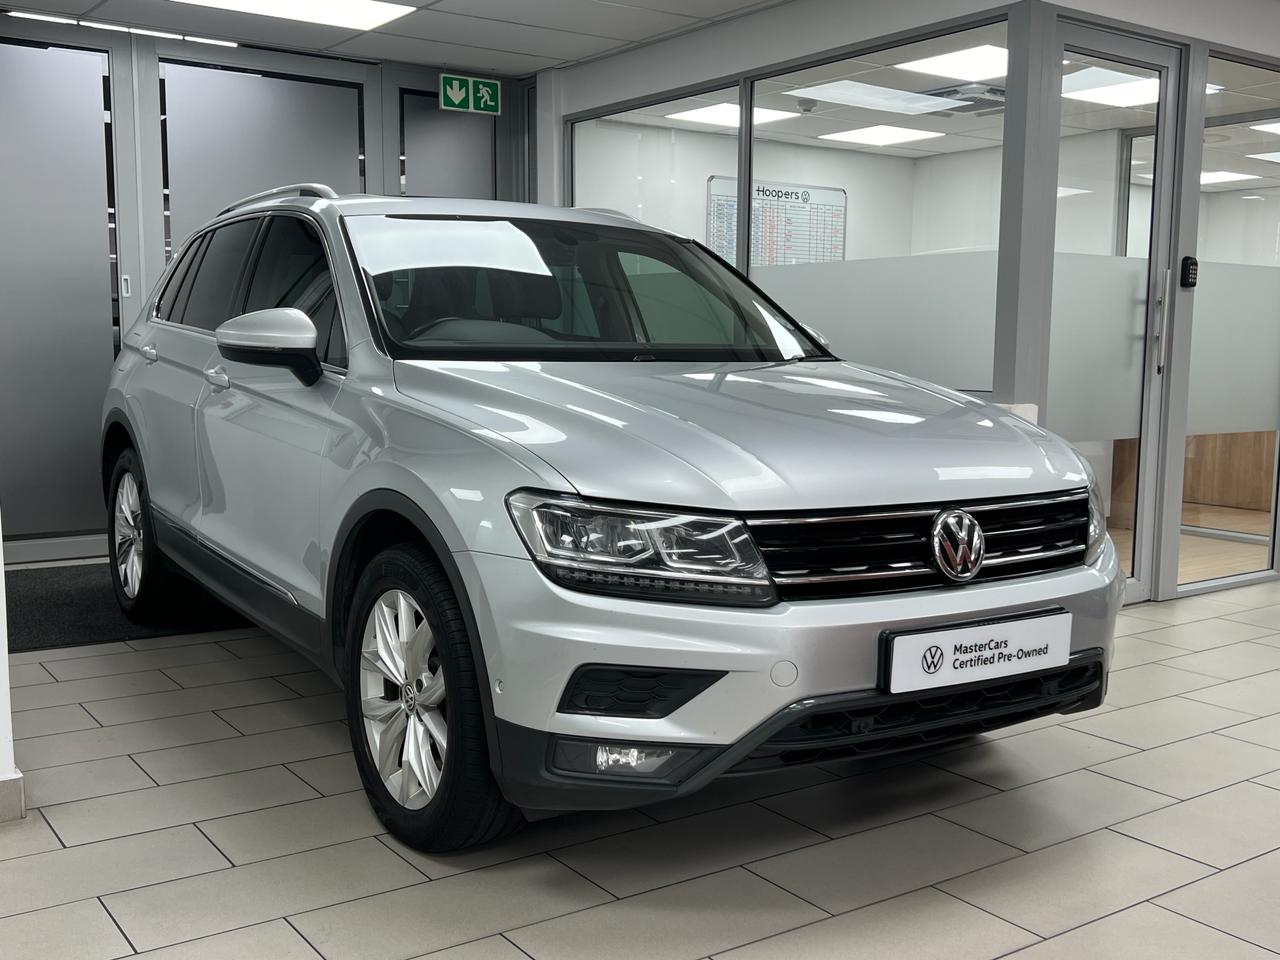 2019 Volkswagen Tiguan  for sale - 01HVMST920480